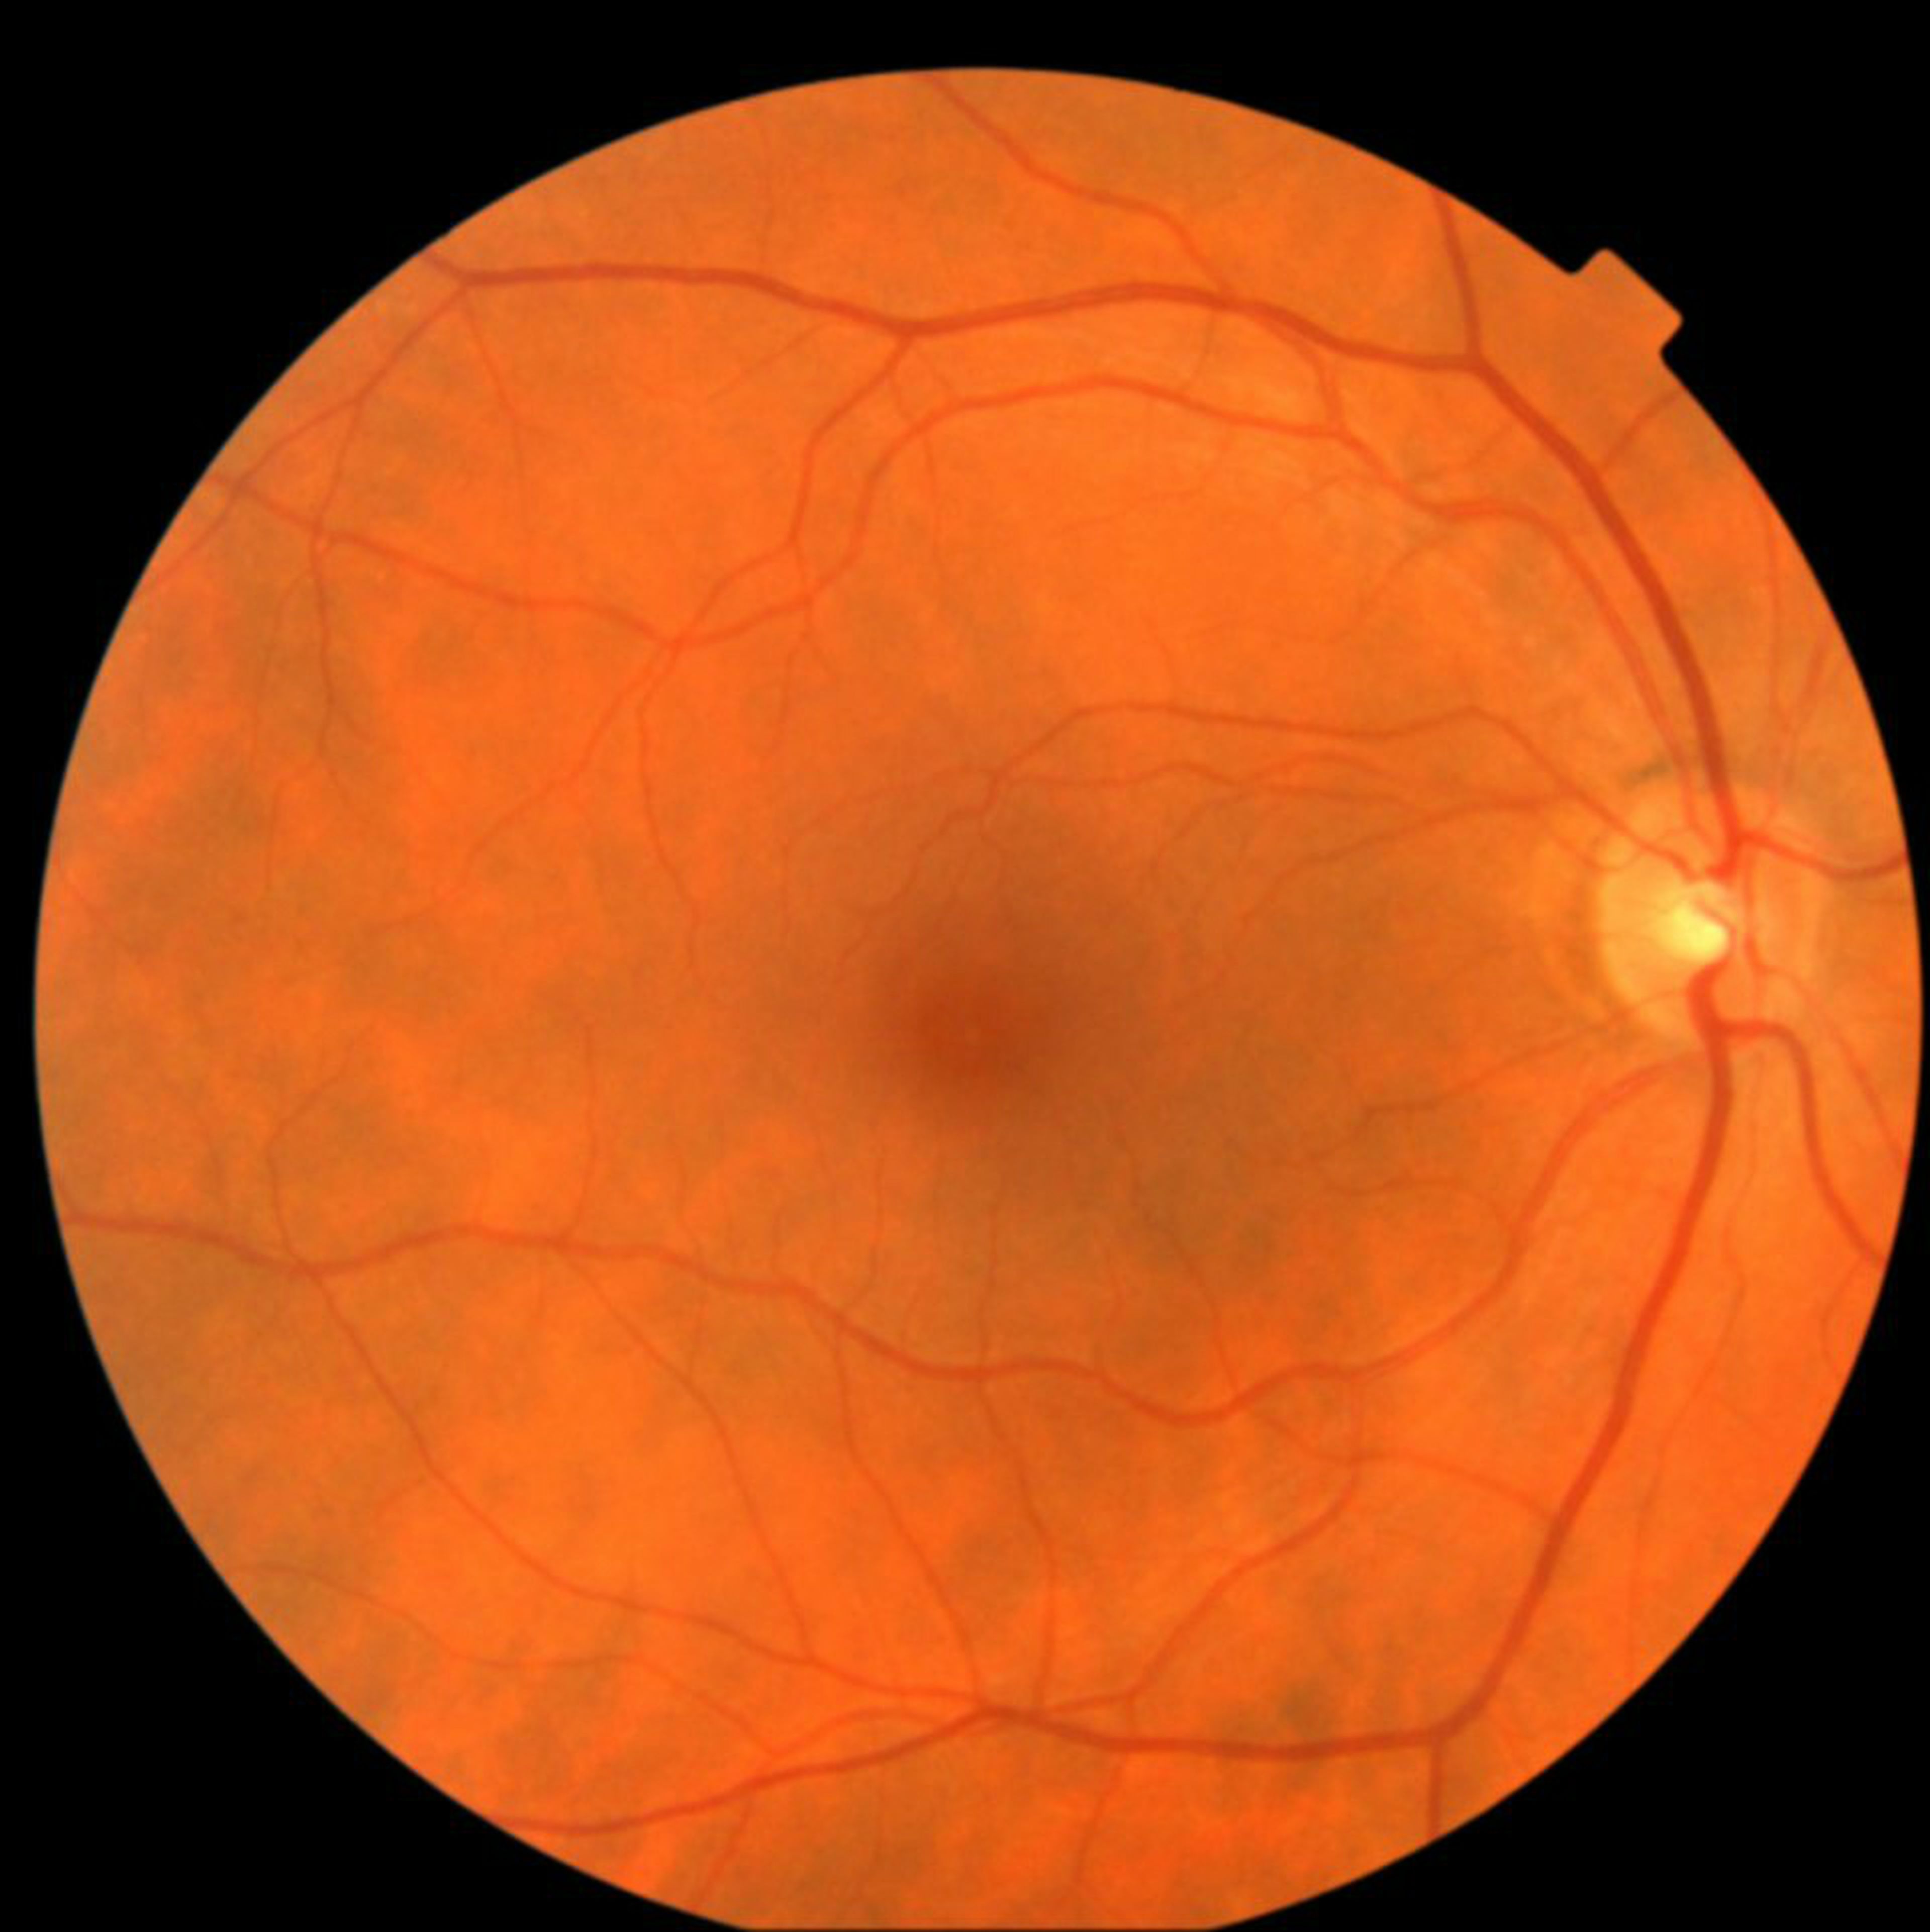 Estas fotografías del fondo de la retina son lo que el software AI utiliza para evaluar el riesgo de enfermedades cardiovasculares.